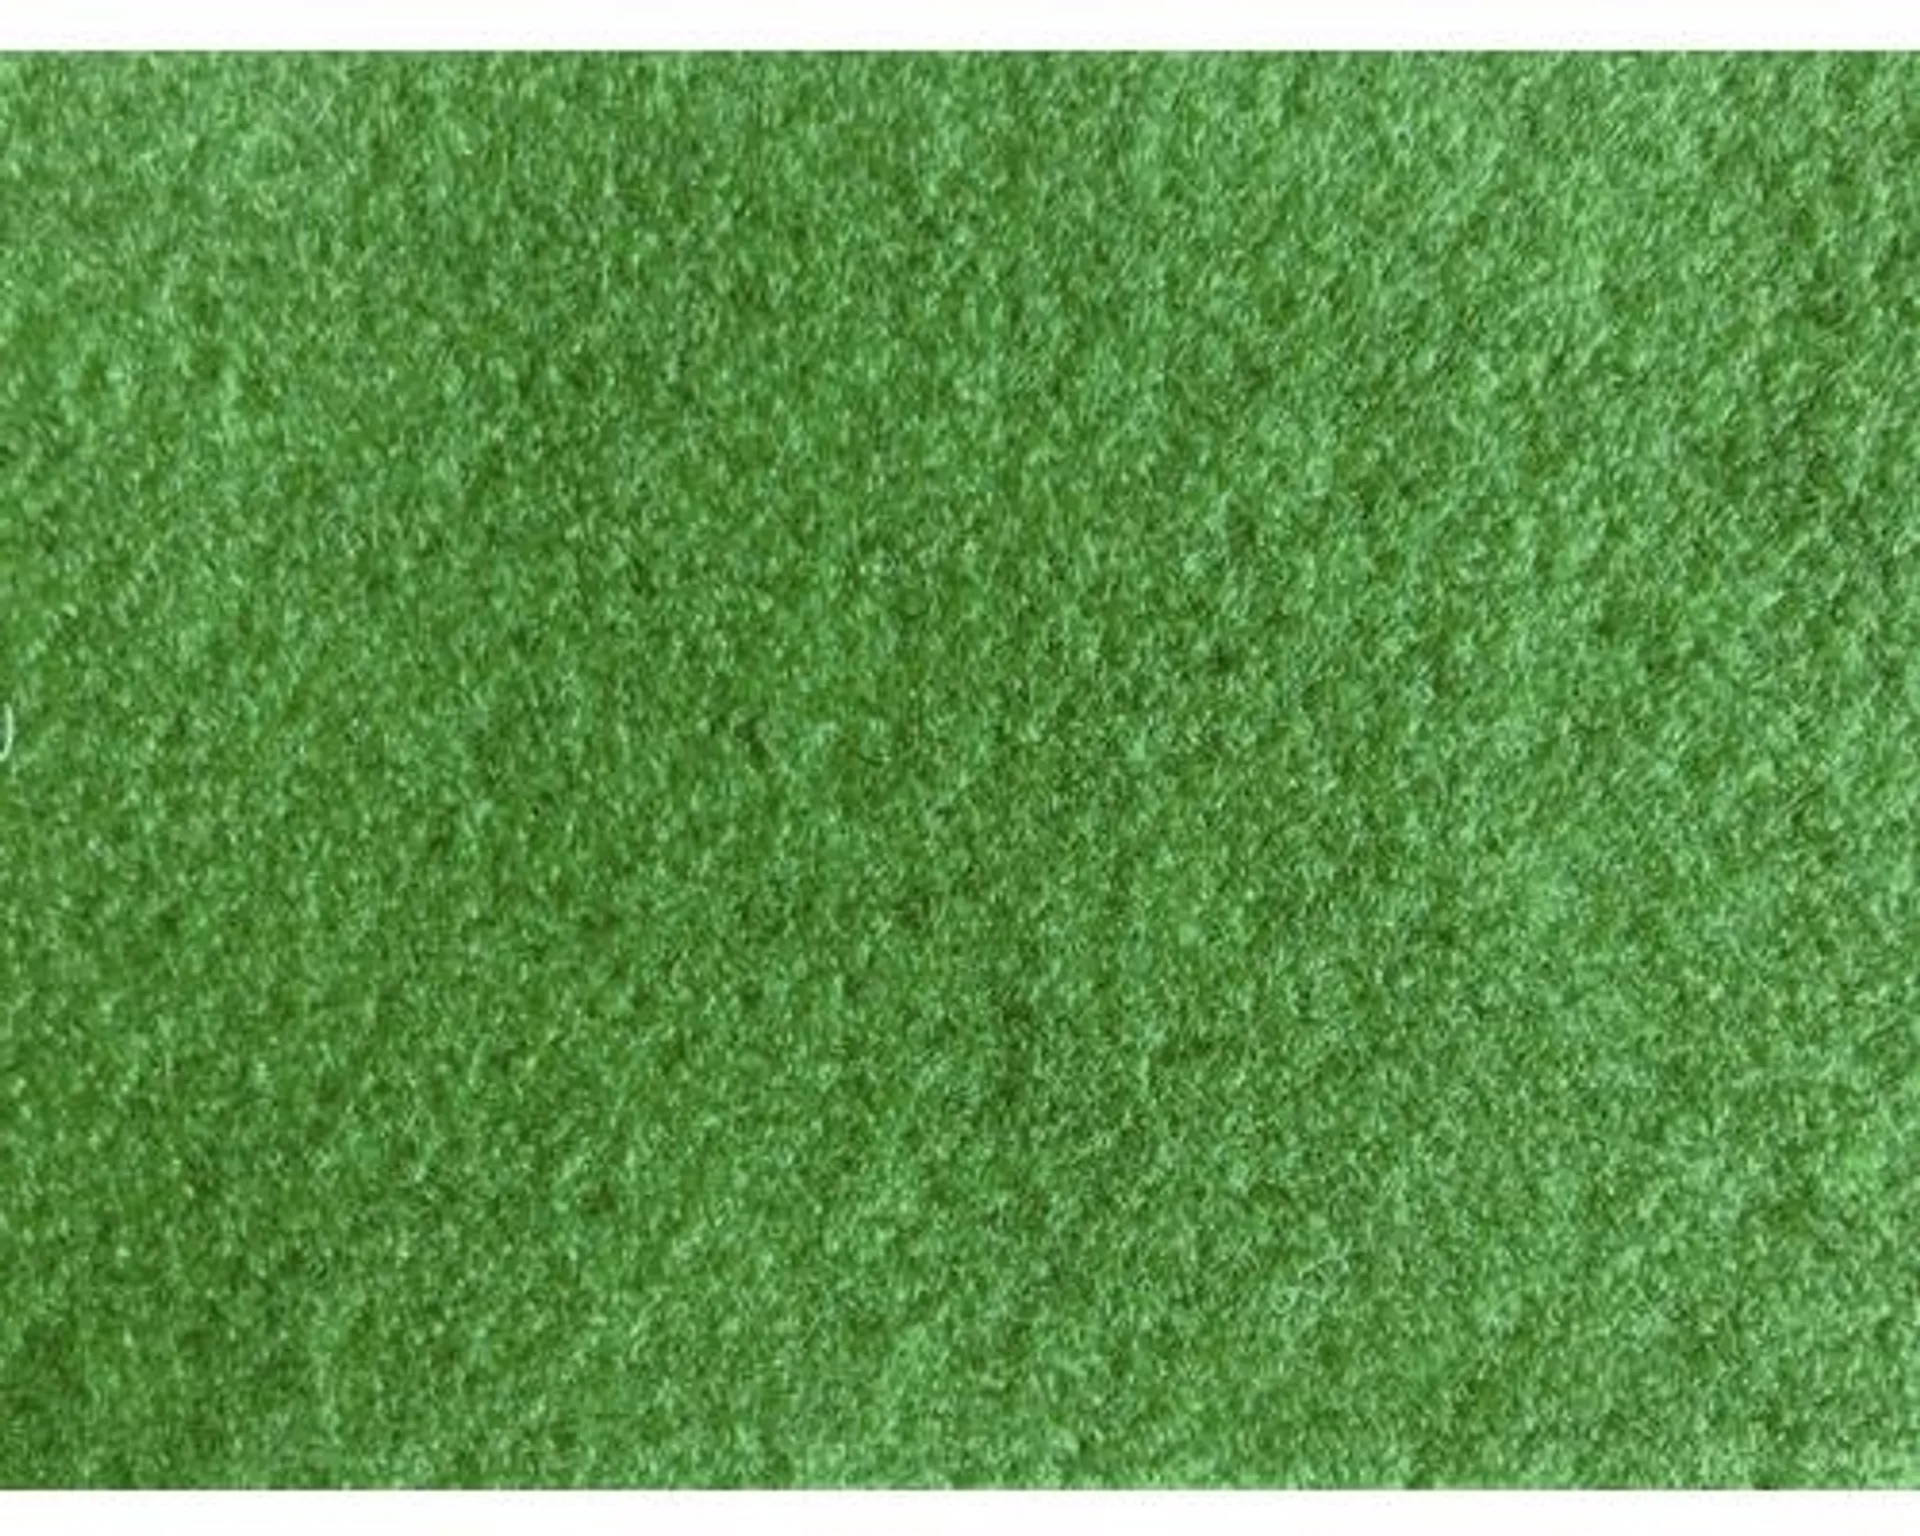 Umelý trávnik Sporting precoat zelený šírka 200 cm (metráž)